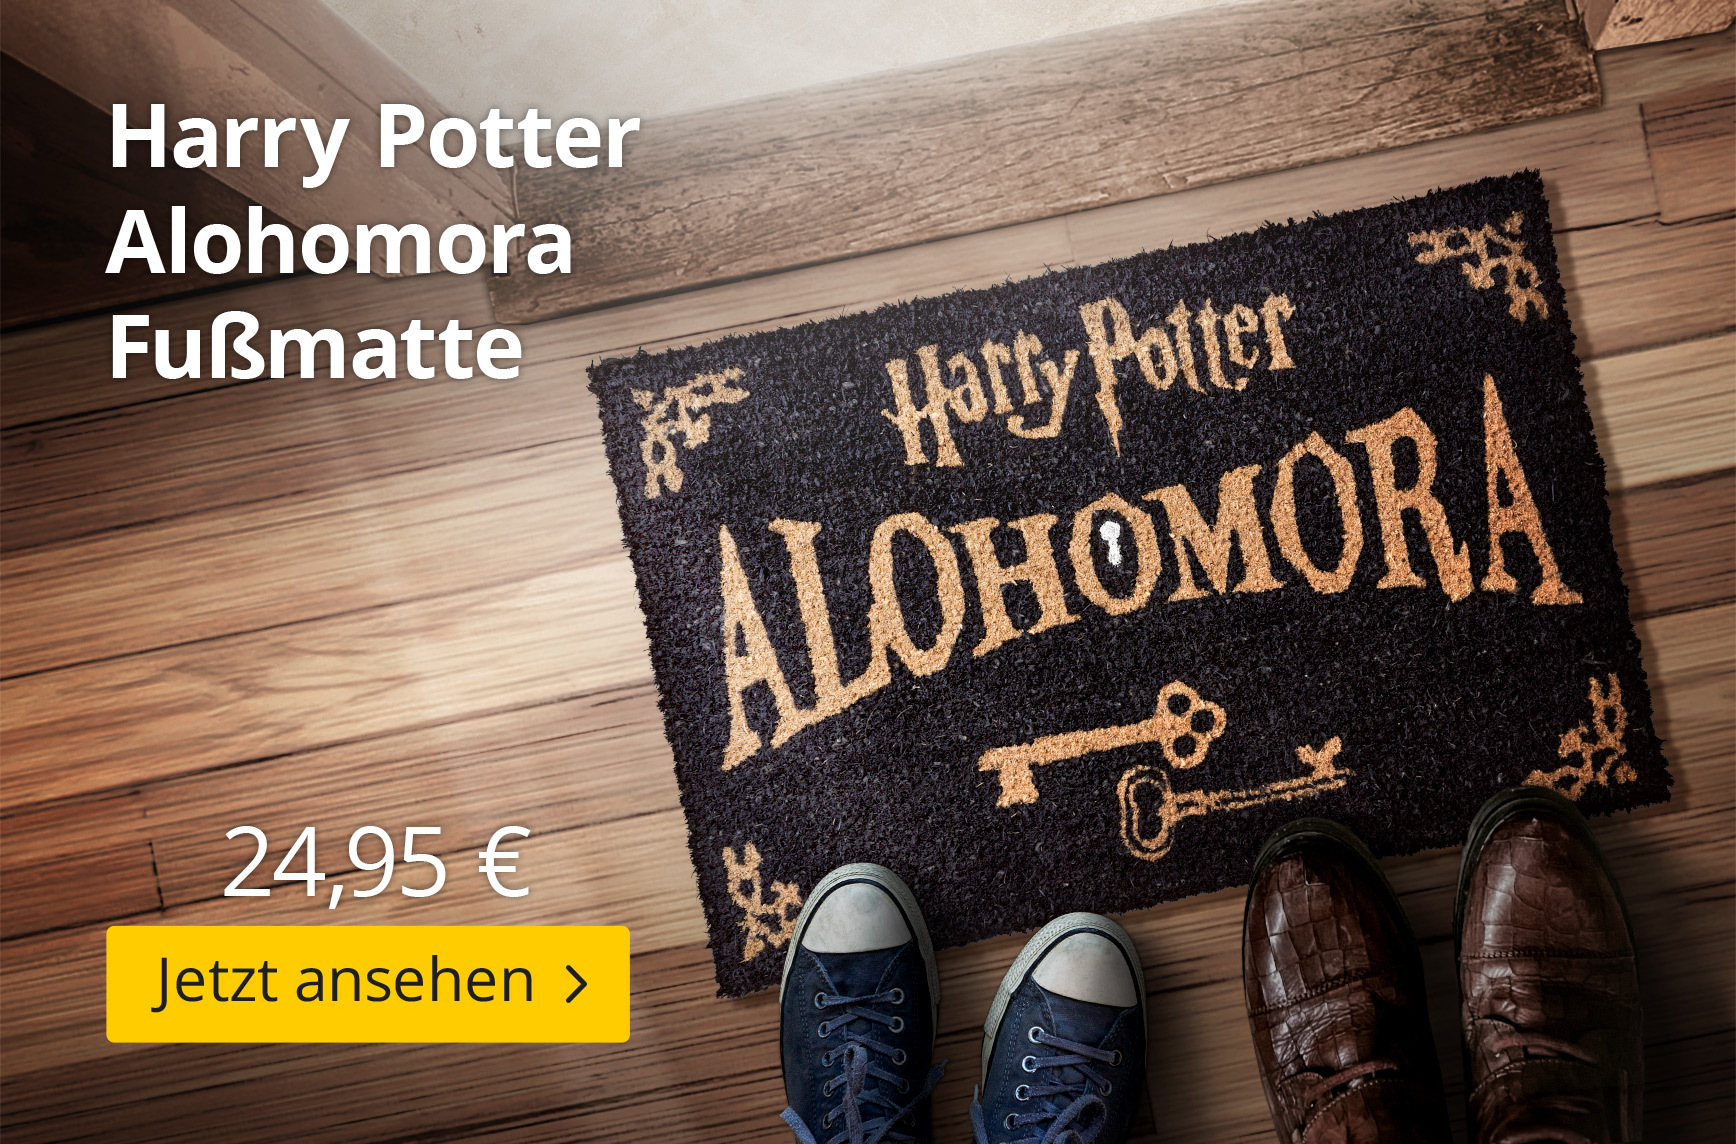 Harry Potter Alohomora Fußmatte - 24,95€